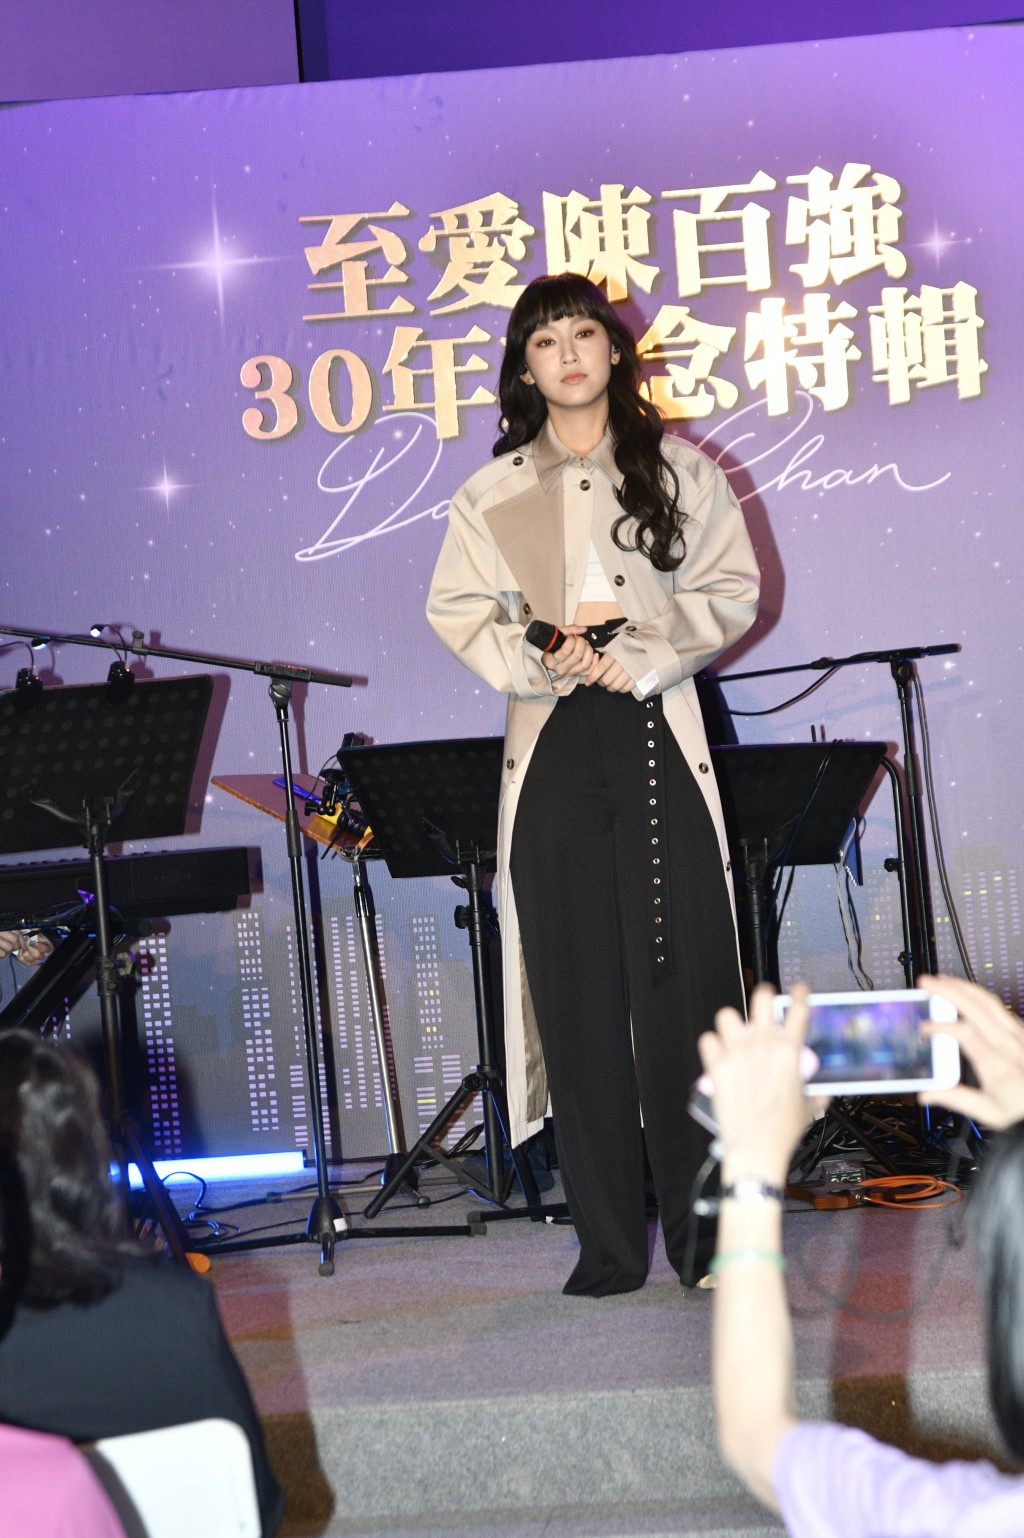 炎明熹打頭陣獻唱陳百強的經典歌曲《念親恩》。